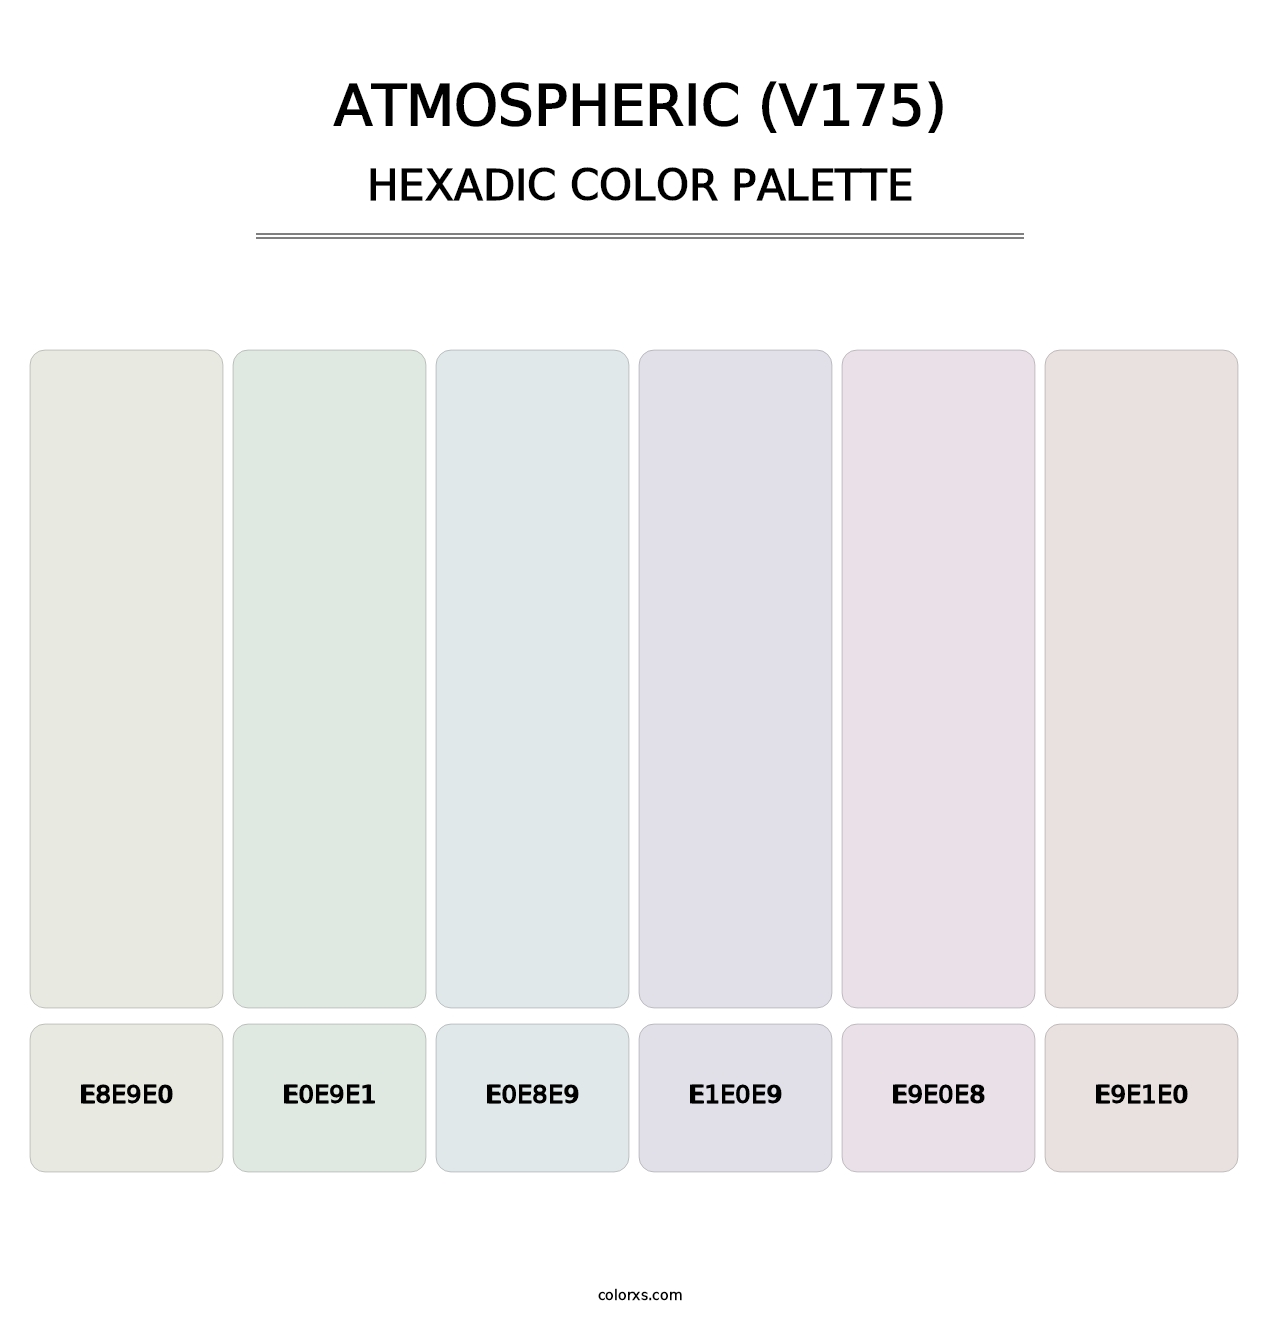 Atmospheric (V175) - Hexadic Color Palette